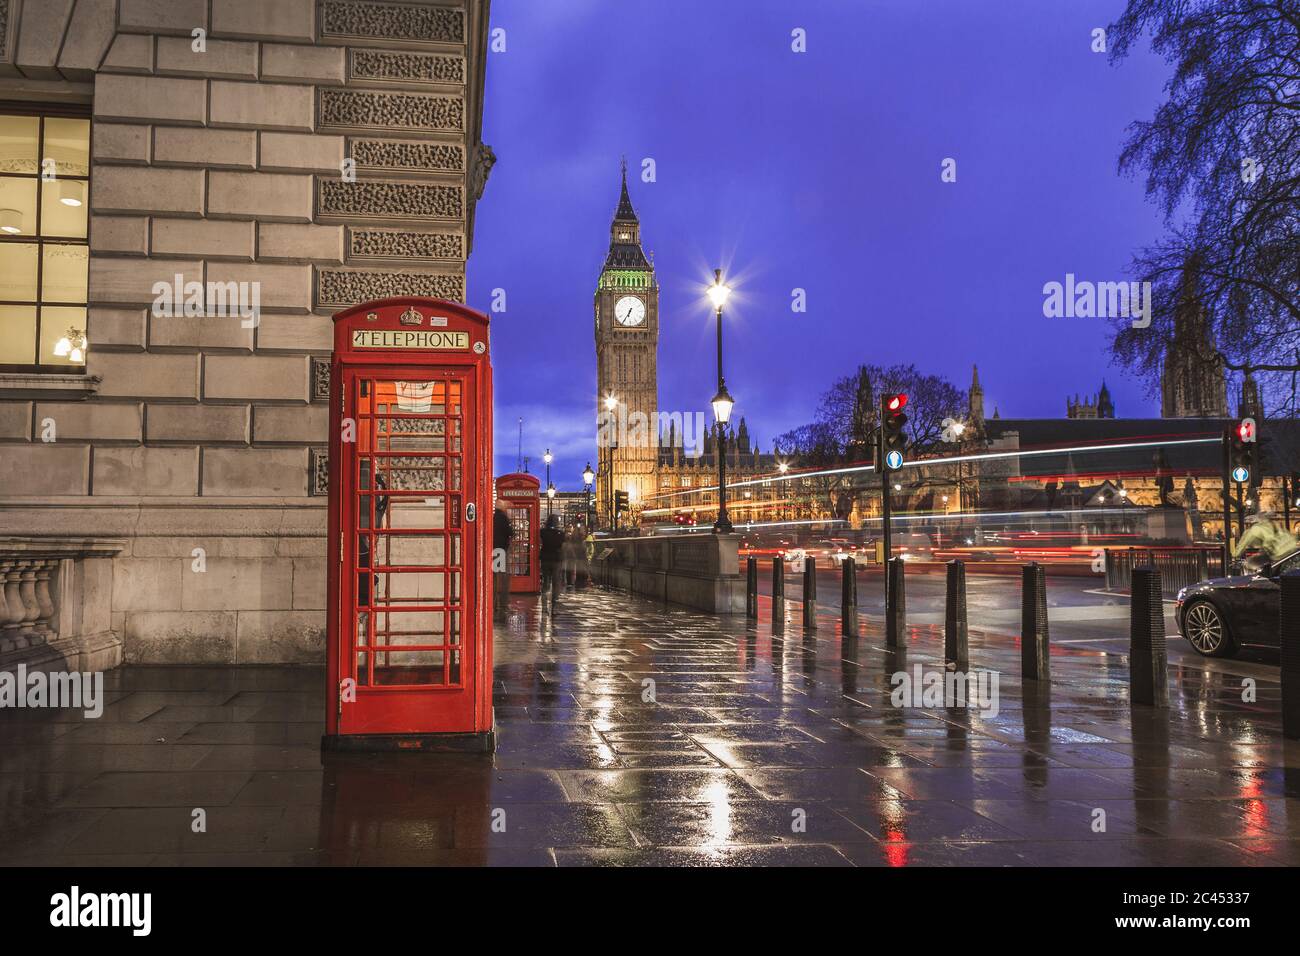 LONDRES, Royaume-Uni - 24 MARS 2015 : Big Ben, Westminster et les cabines téléphoniques rouges dans le centre de Londres la nuit Banque D'Images